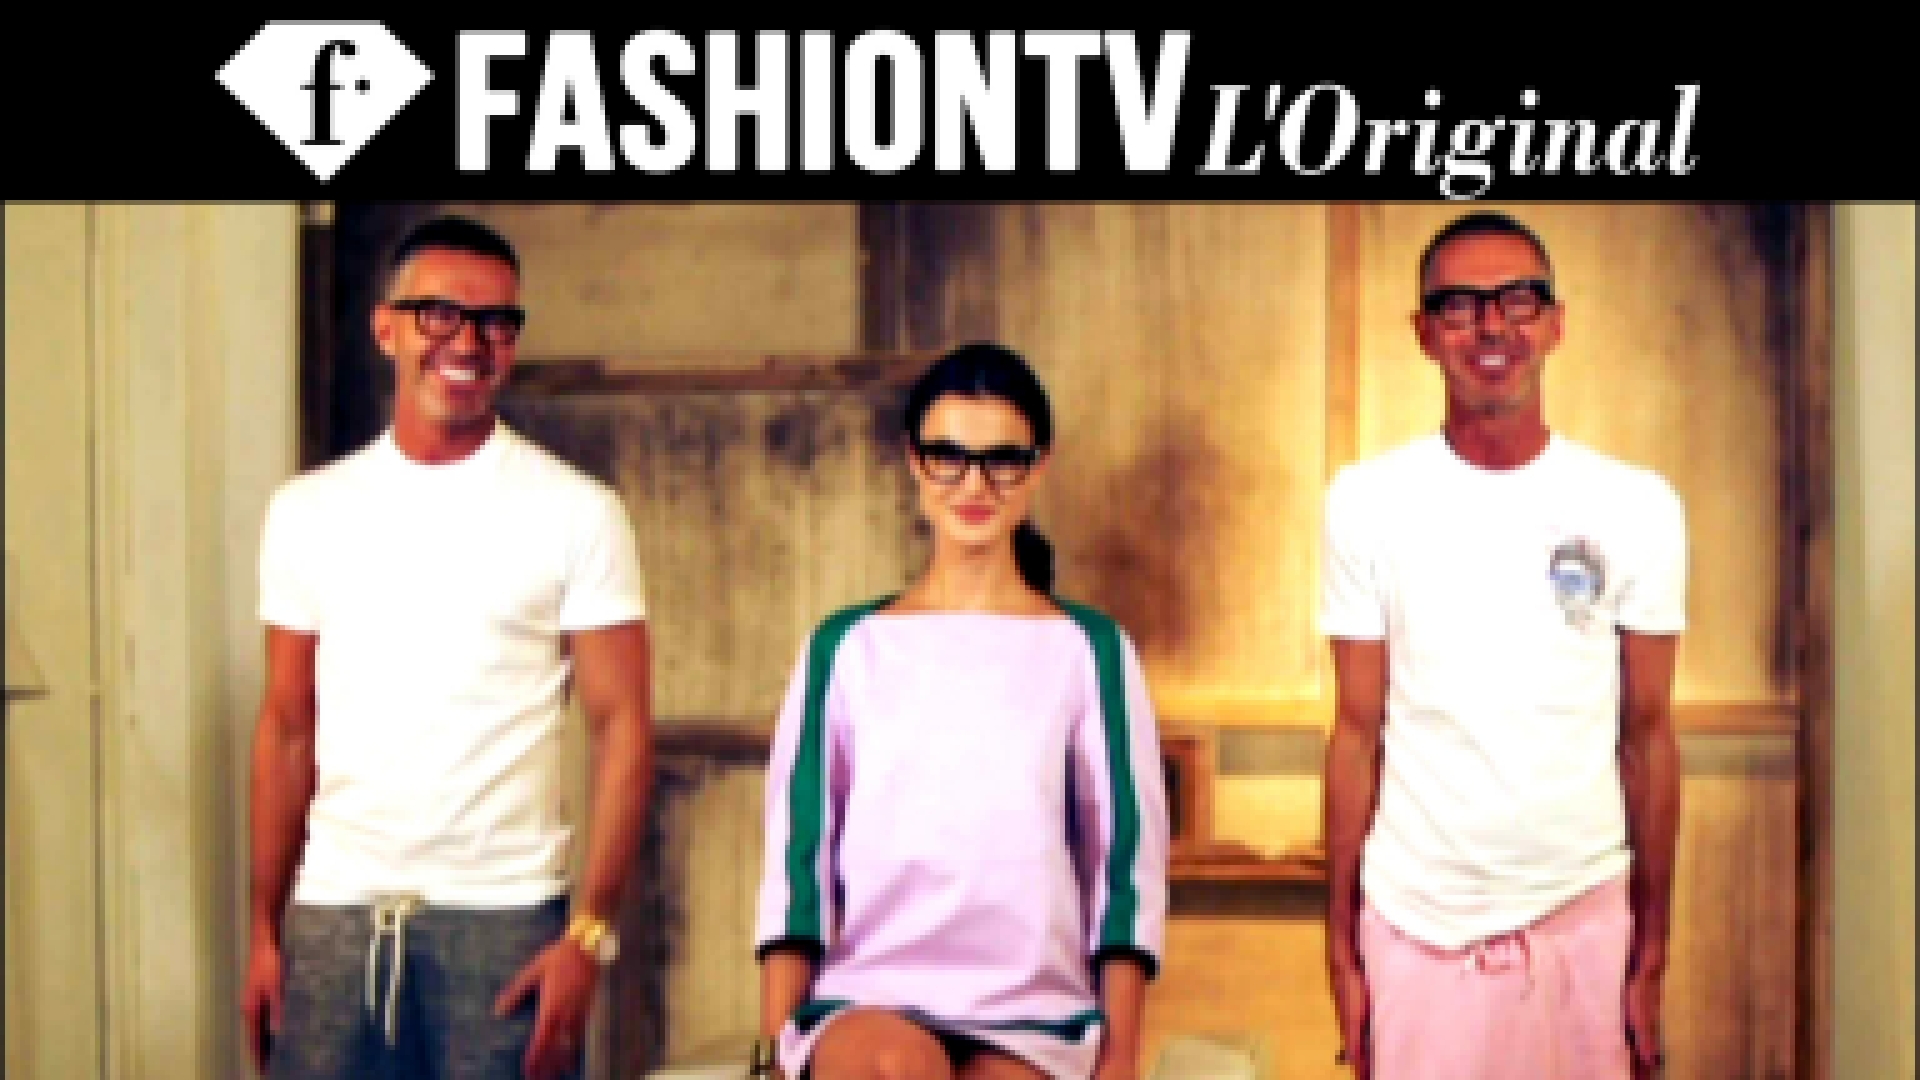 Неделя моды в Милане: Показ Dsquared2  (Дин и Дан) Весна-Лето 2015 | FashionTV - видеоклип на песню